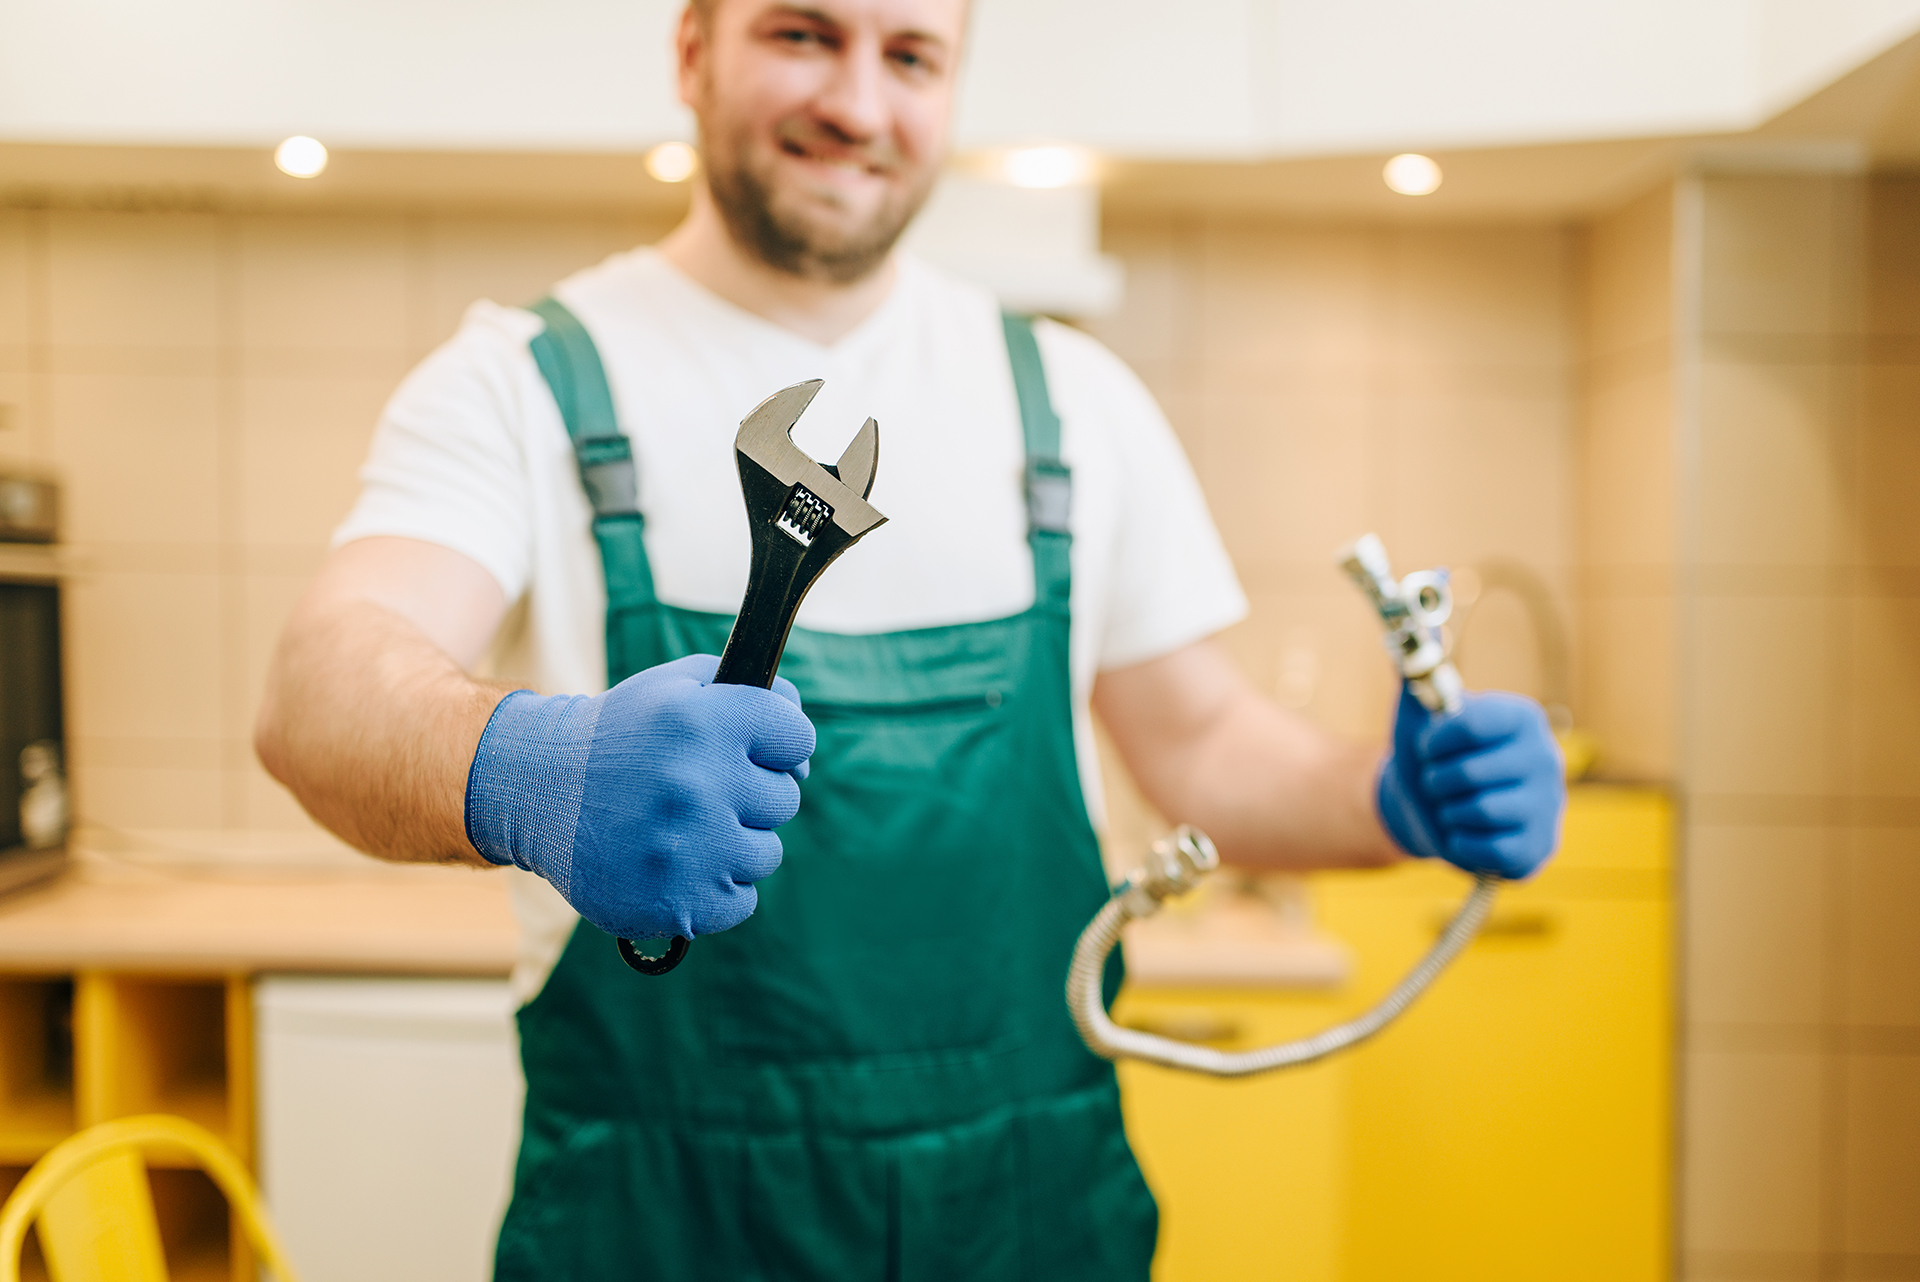 plumber-in-uniform-holds-wrench-handyman-living-quinn-residences